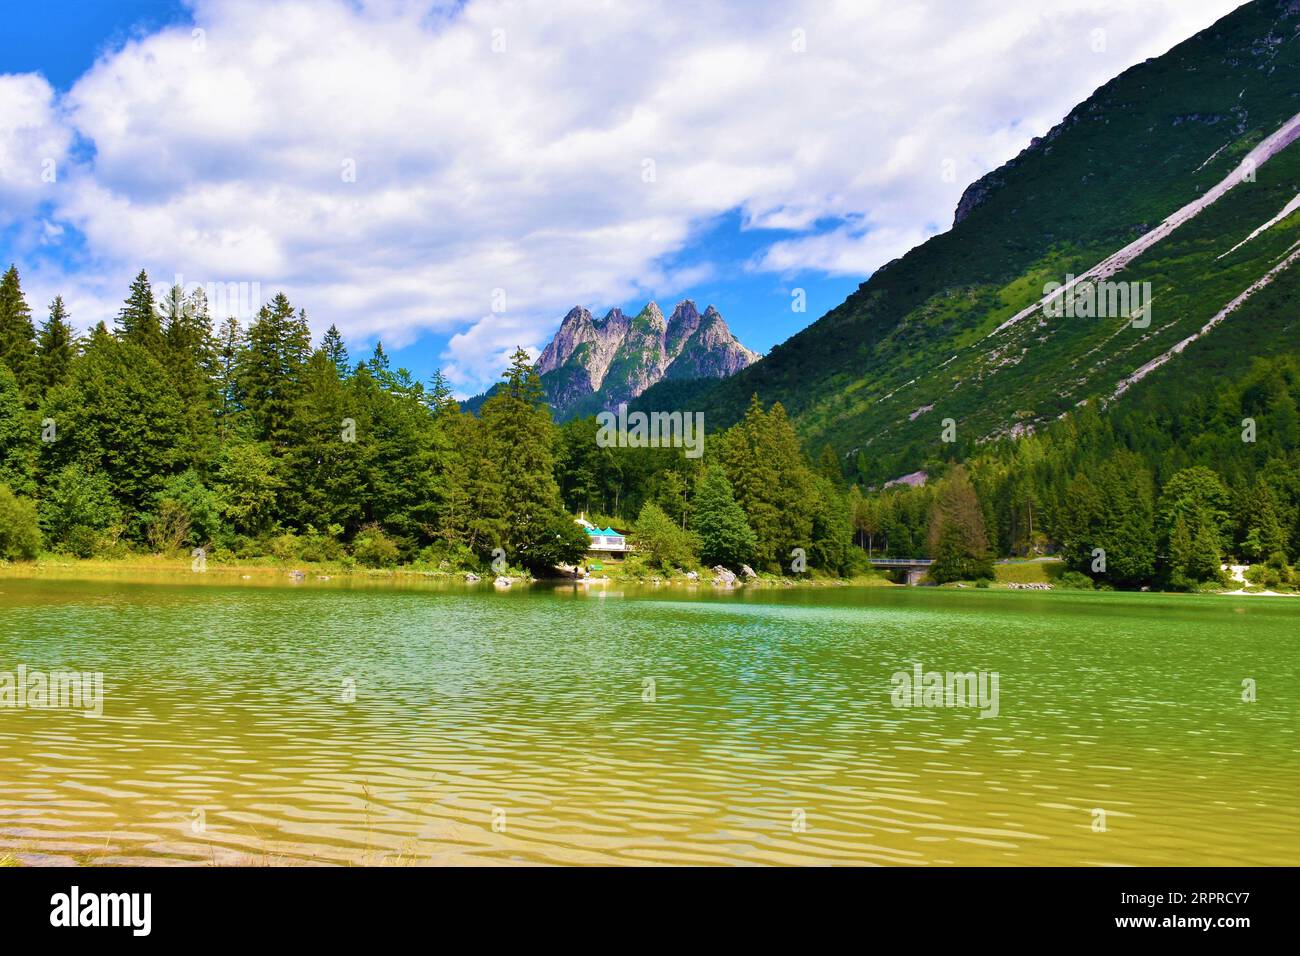 Cinque Punte mountain peaks at Lago del Predil near Tarvisio in Italy Stock Photo